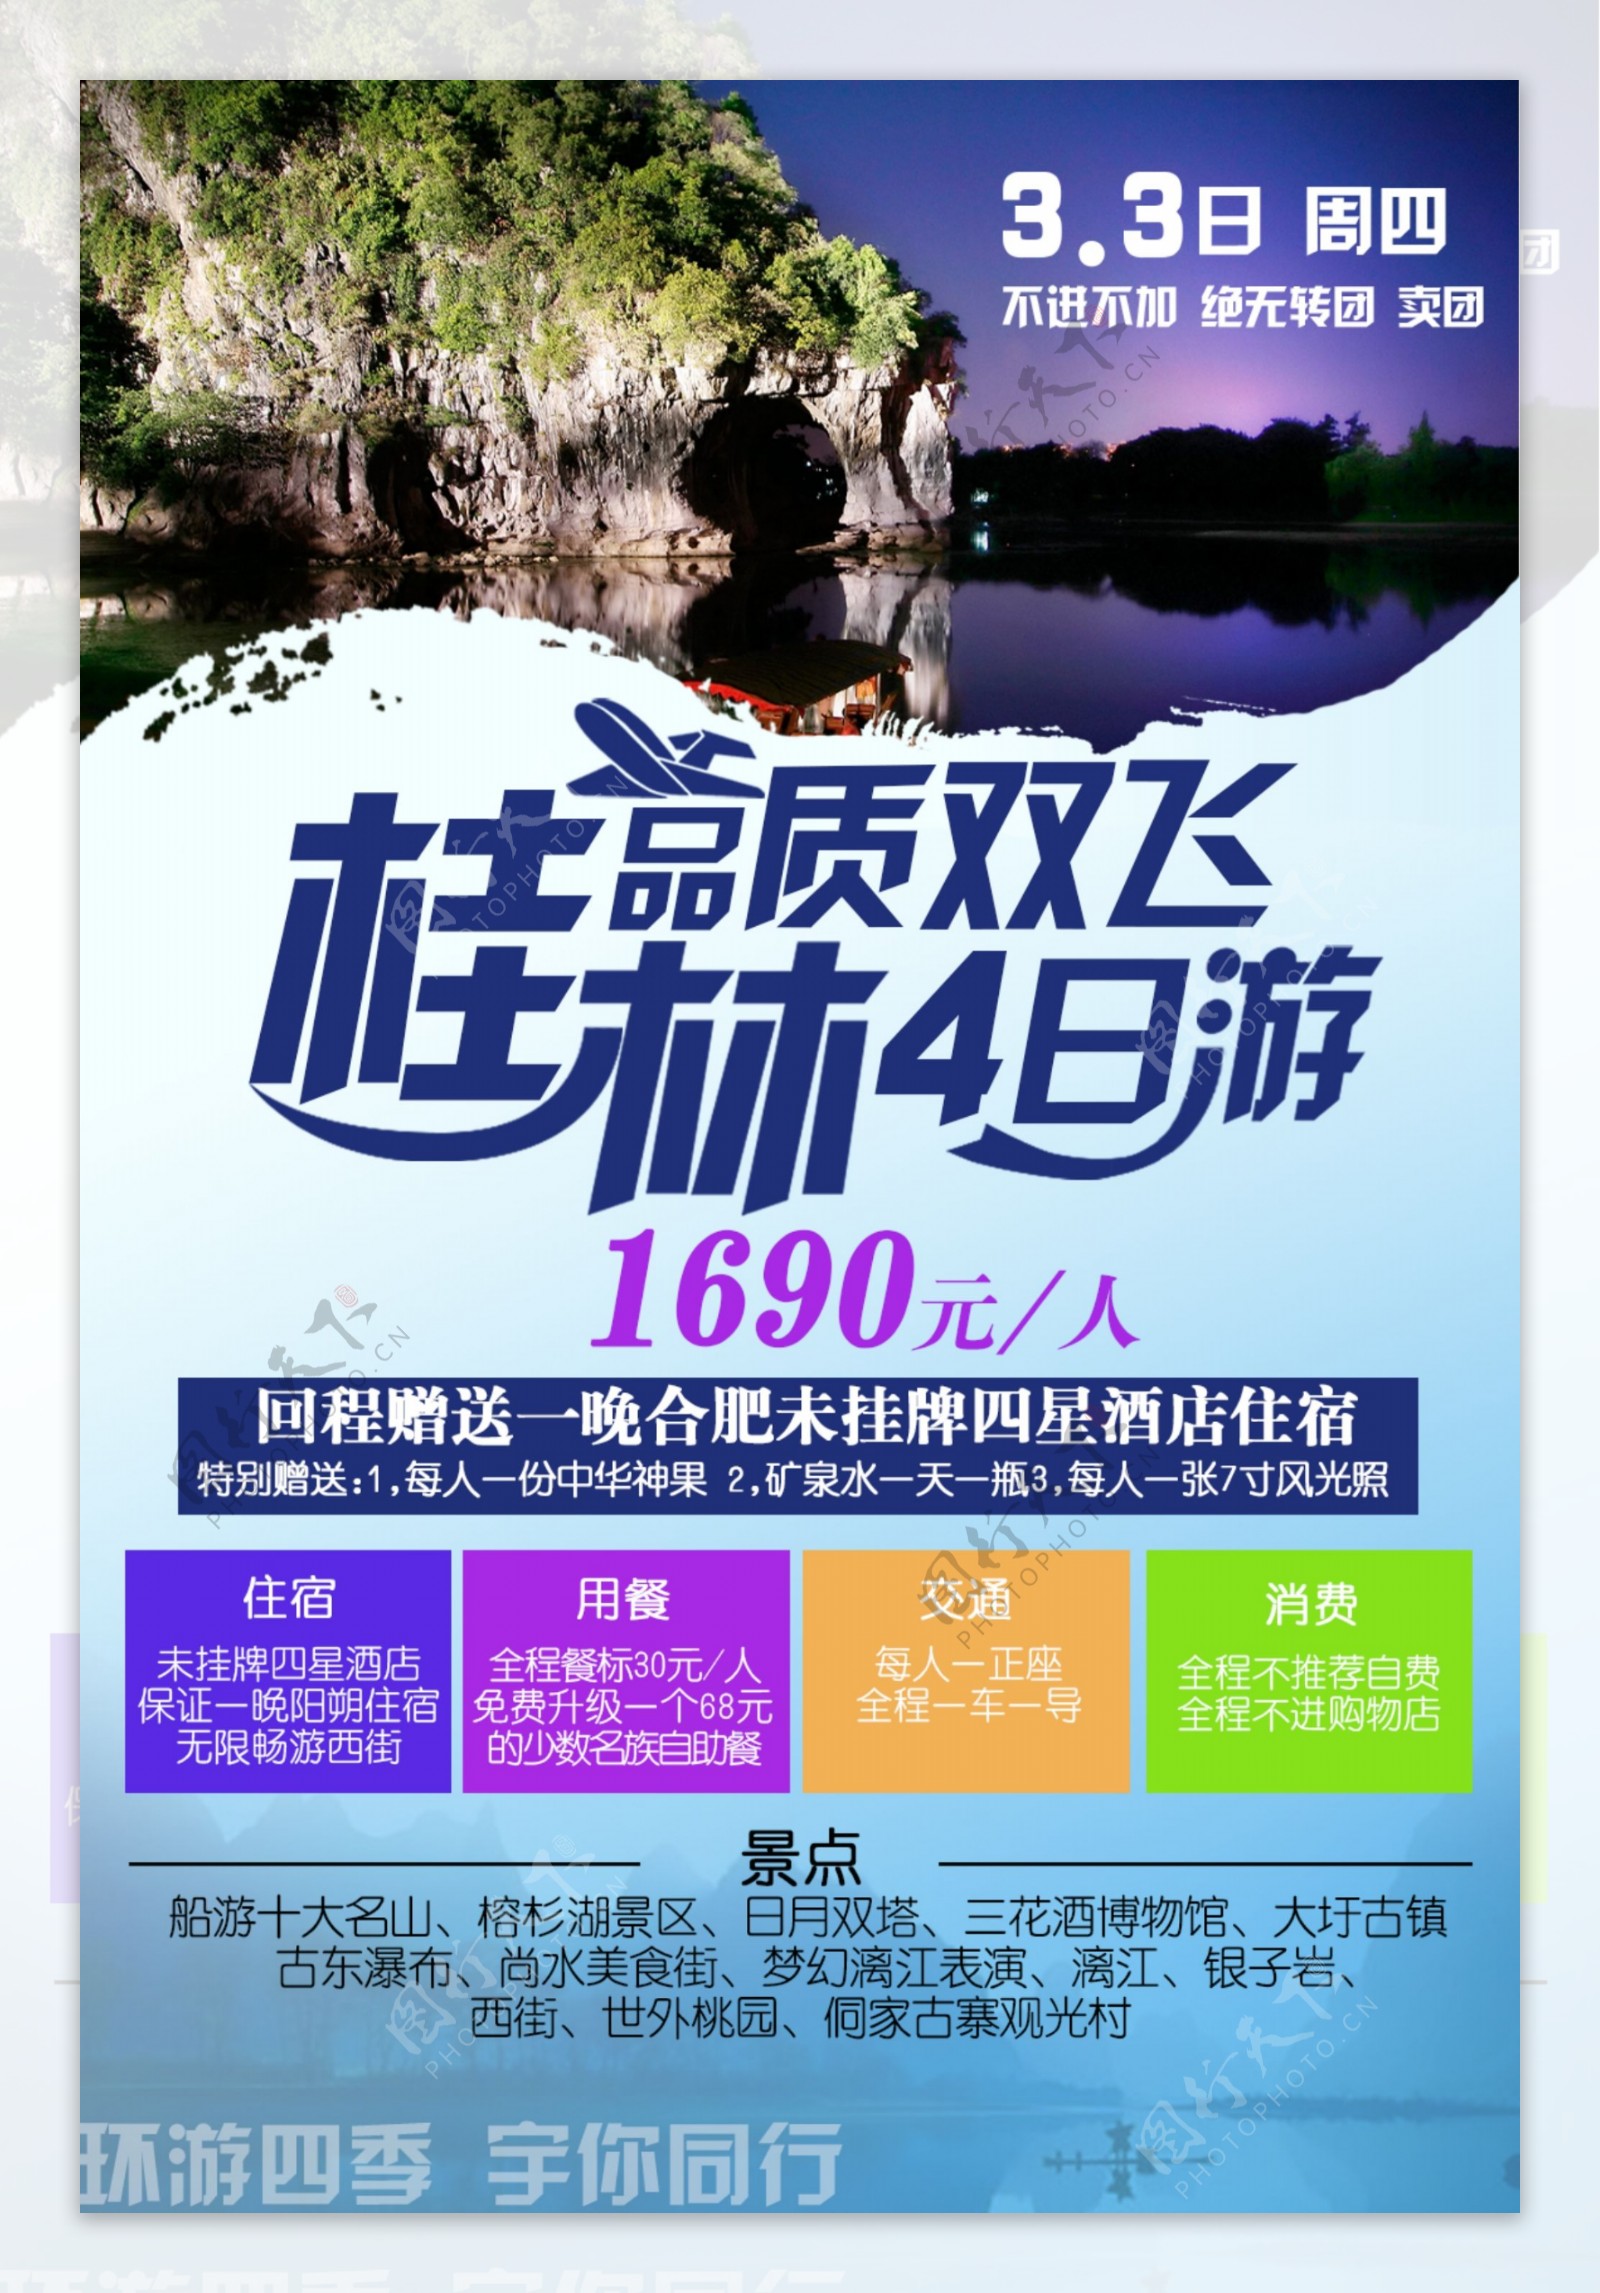 旅行社宣传单页微信广告平面设计海报